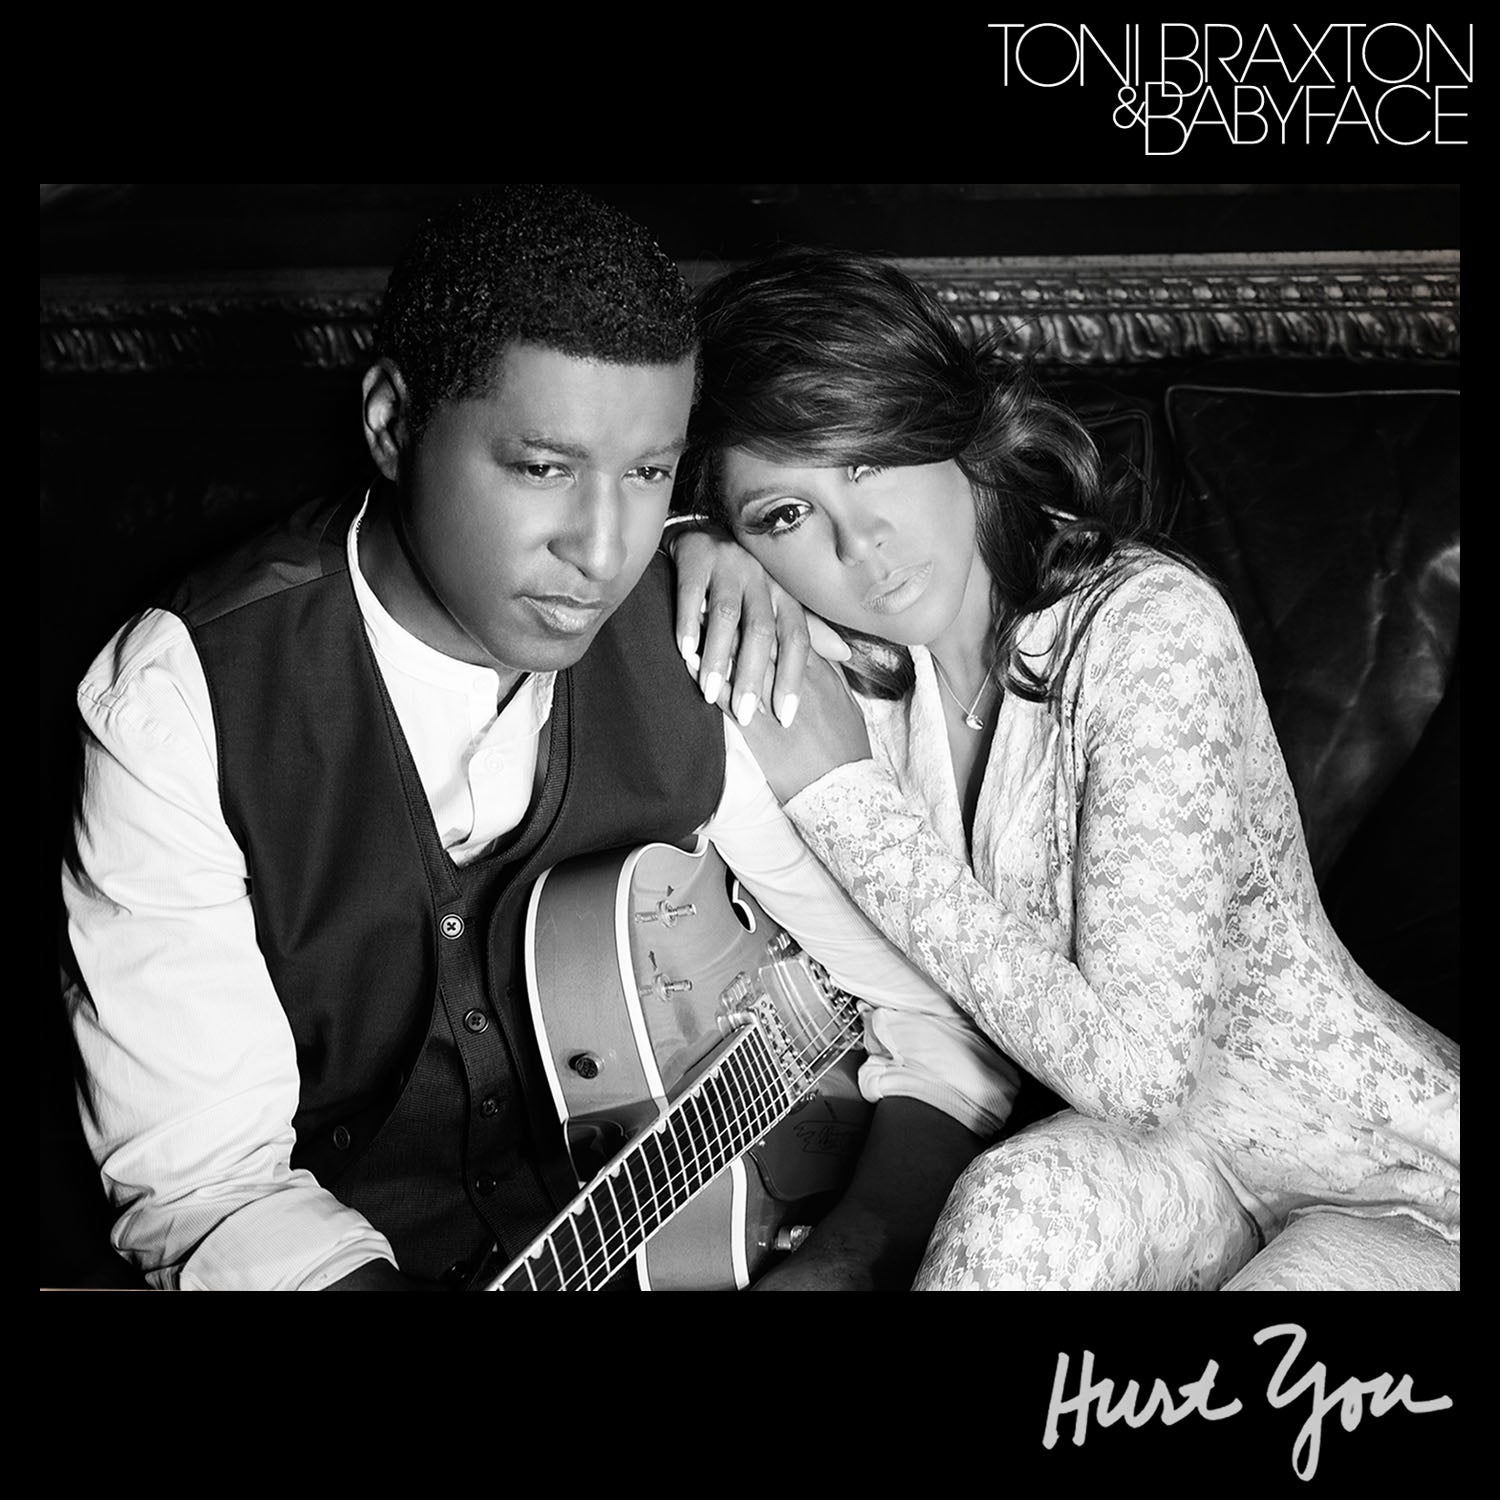 Hear Toni Braxton & Babyface's New Song